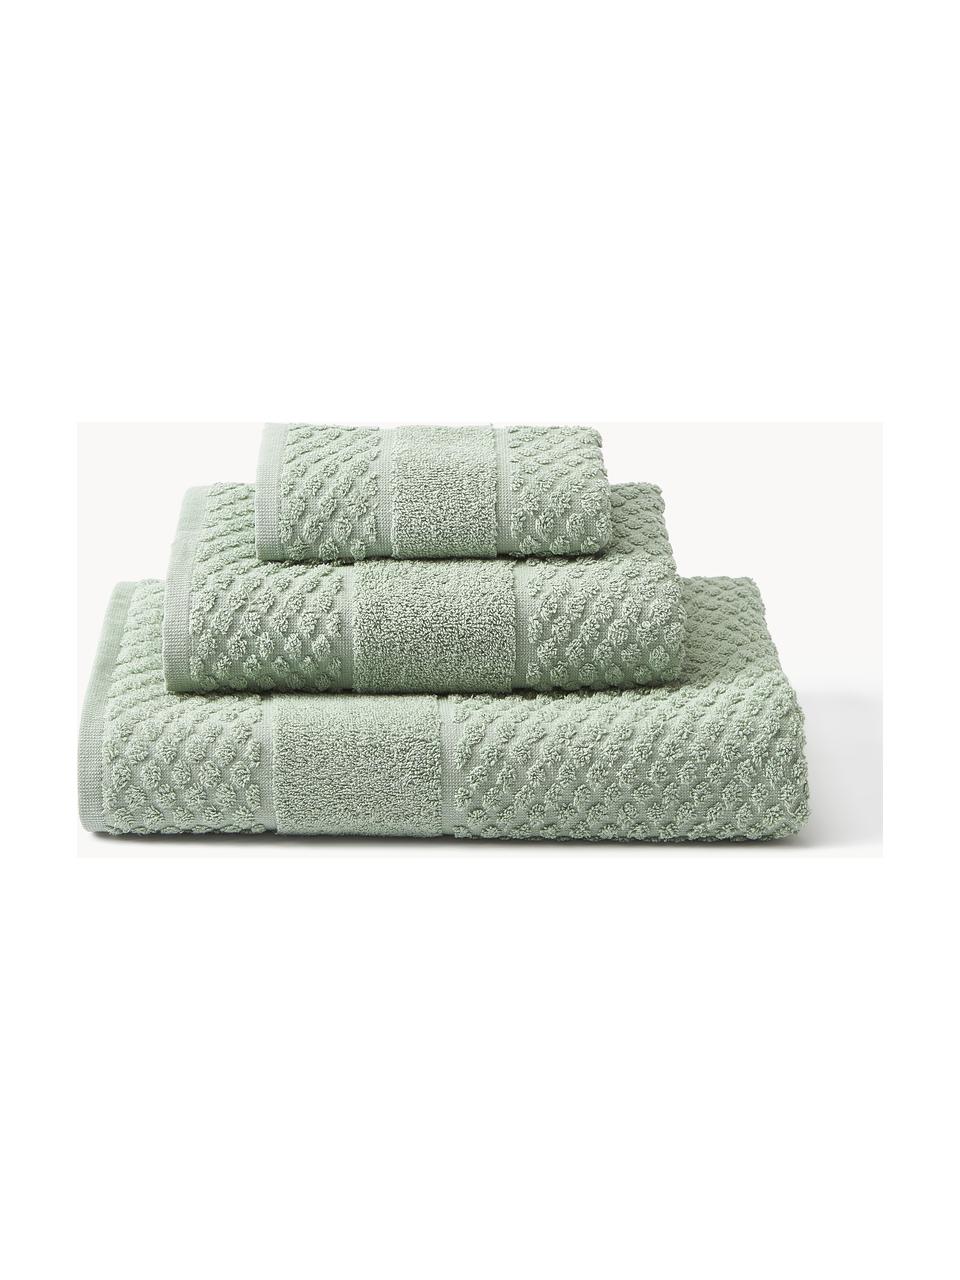 Komplet ręczników Katharina, różne rozmiary, Szałwiowy zielony, 4 elem. (ręcznik do rąk & ręcznik kąpielowy)